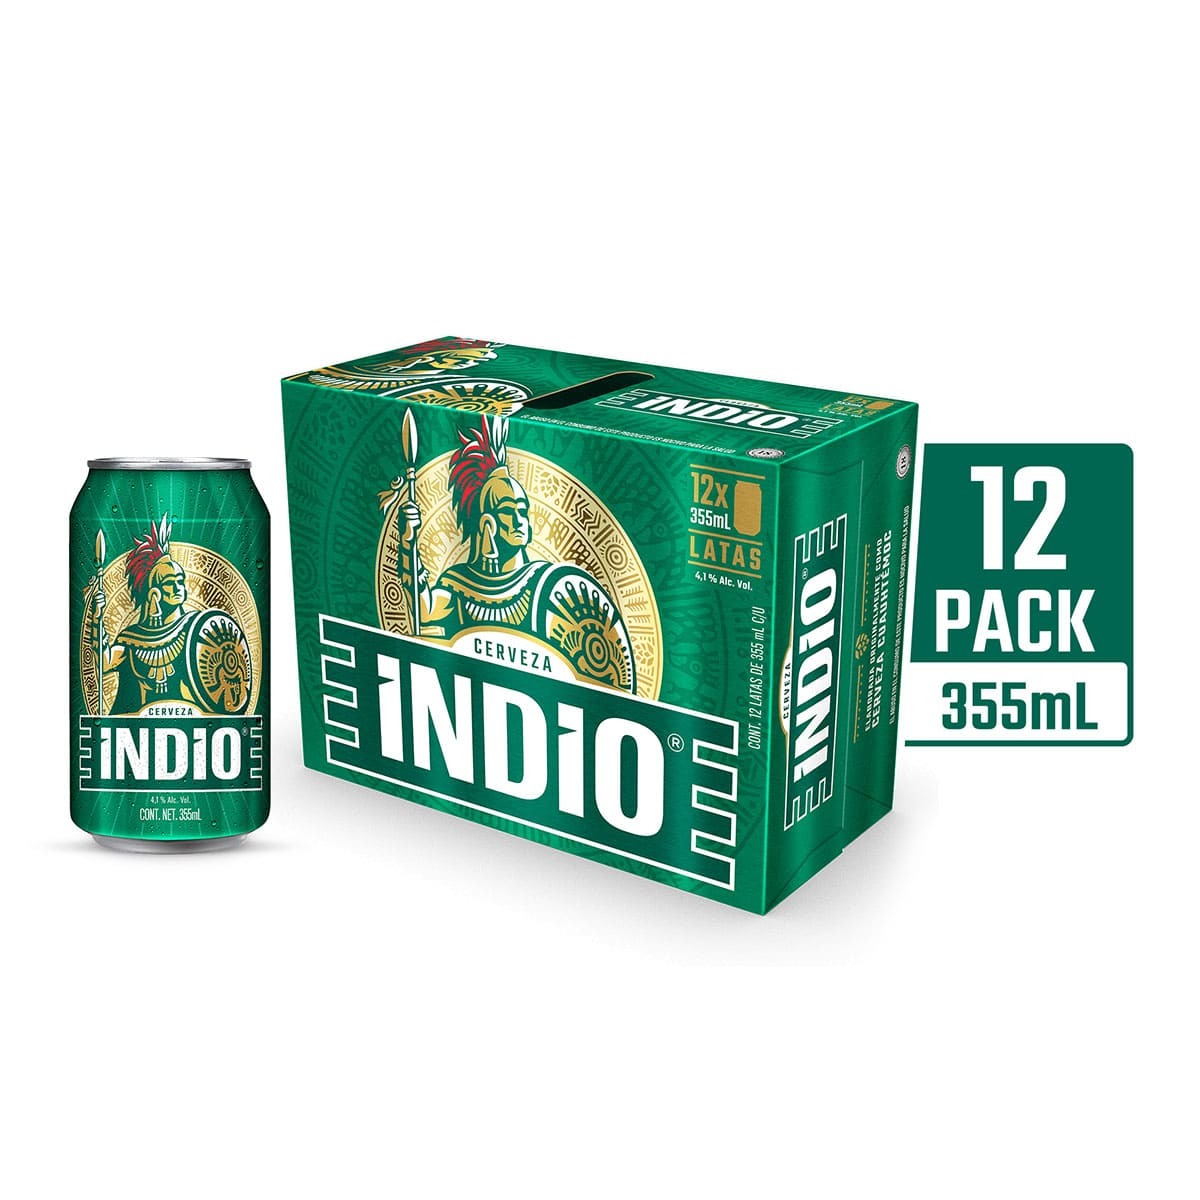 Indio 12 Pack